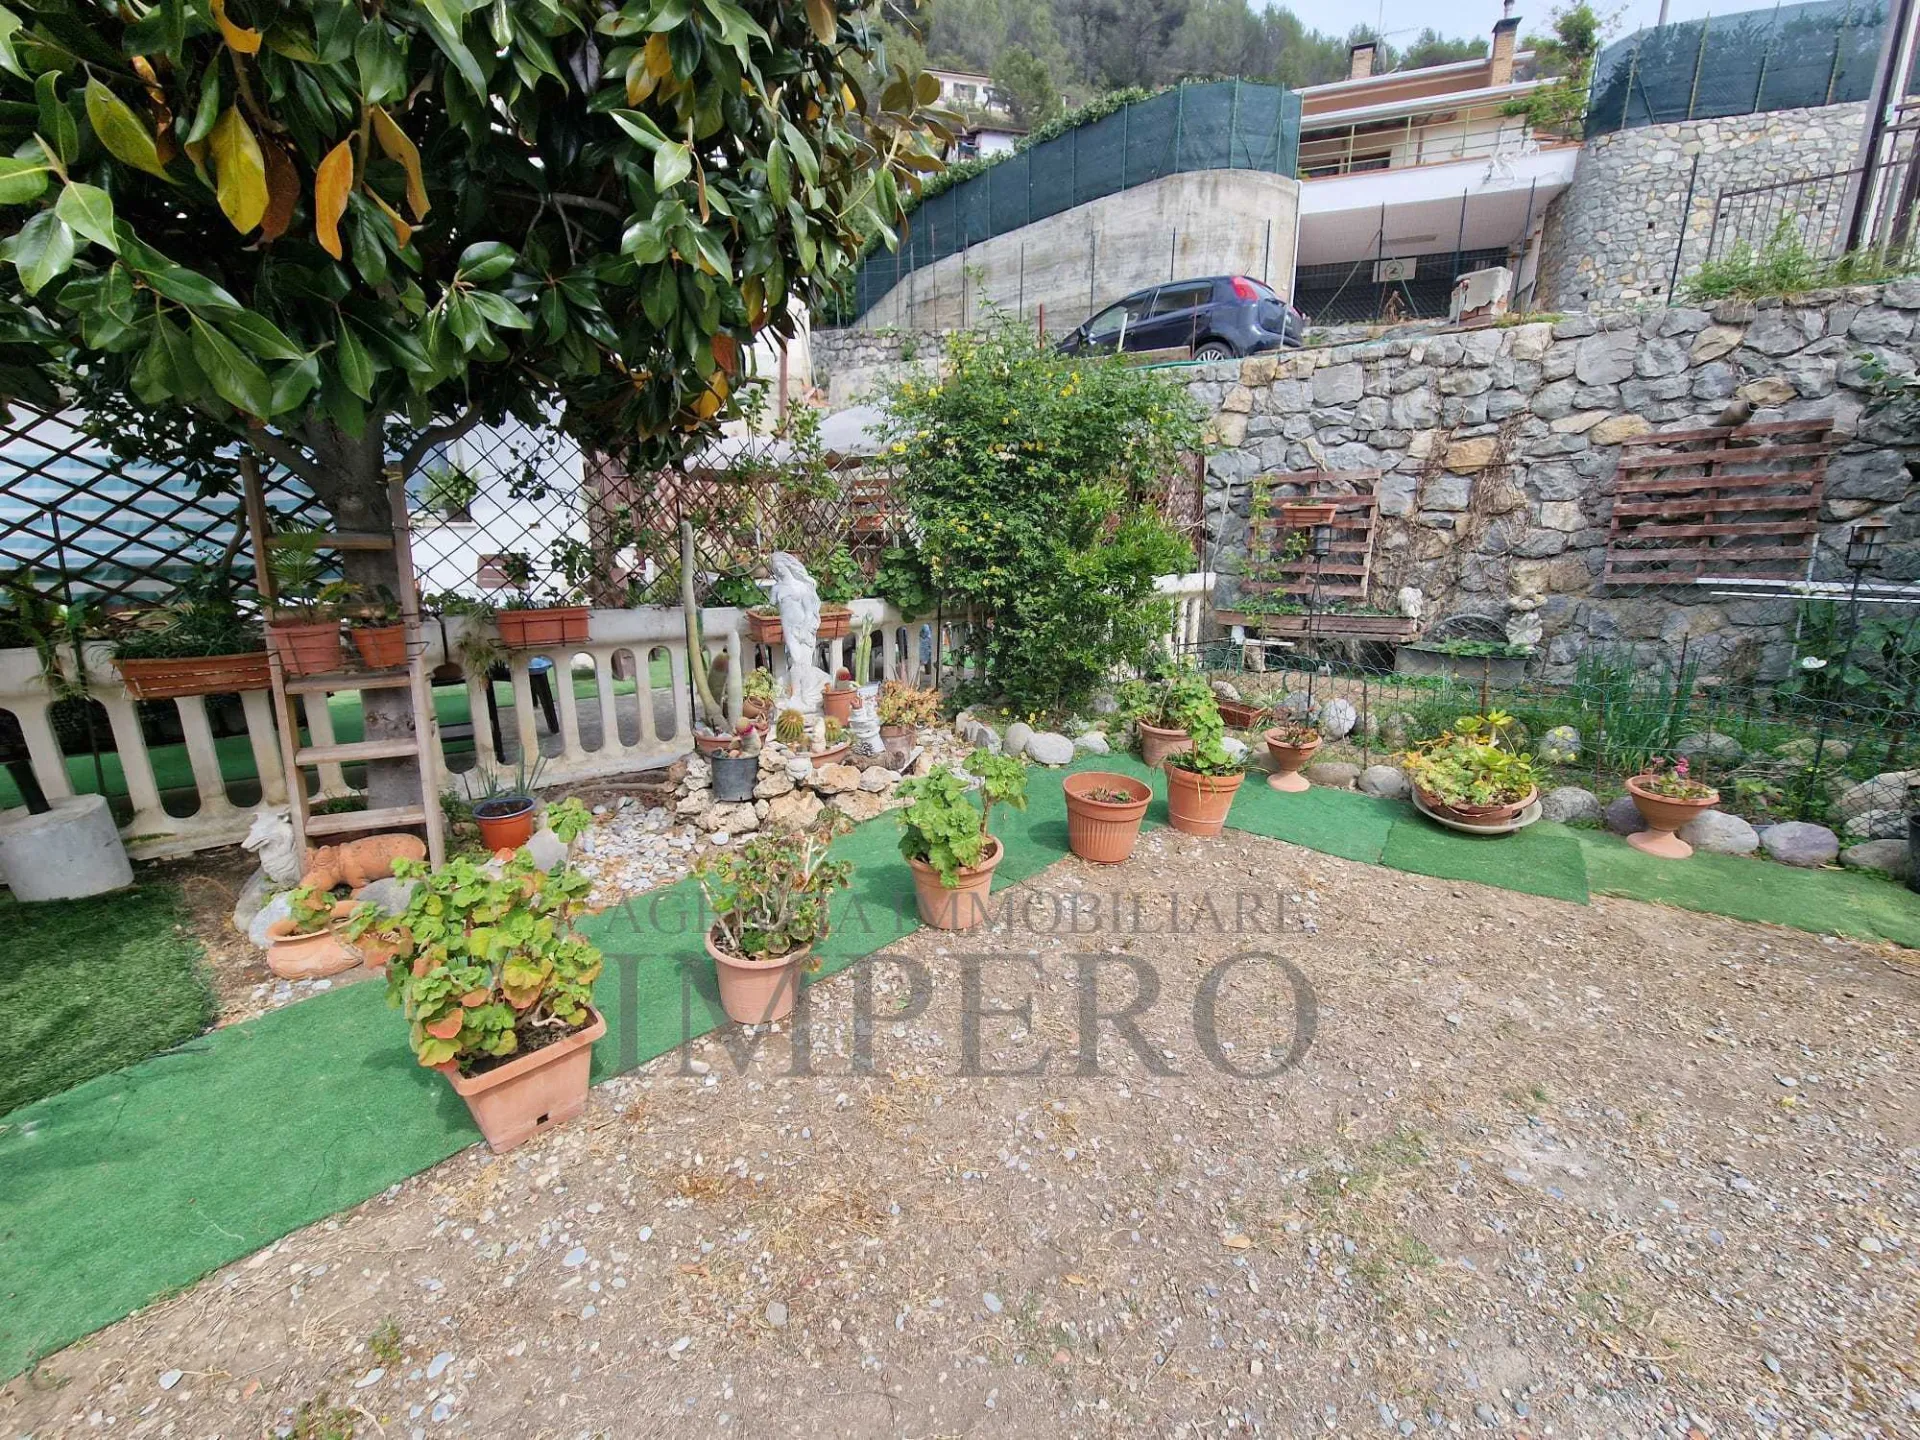 Immagine per Porzione di casa in vendita a Ventimiglia via Tremola 11